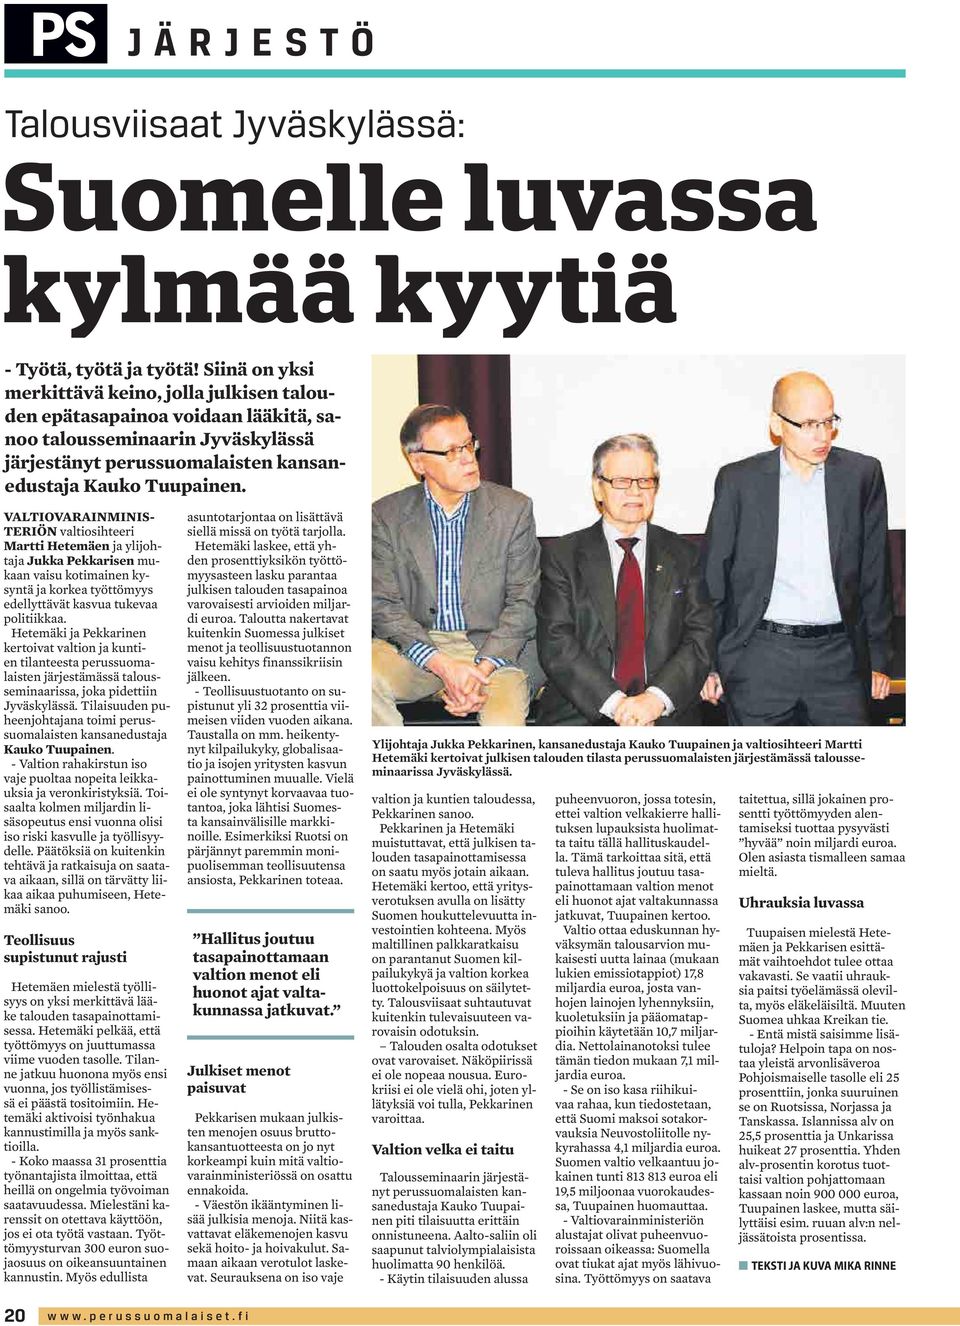 VALTIOVARAINMINIS- TERIÖN valtiosihteeri Martti Hetemäen ja ylijohtaja Jukka Pekkarisen mukaan vaisu kotimainen kysyntä ja korkea työttömyys edellyttävät kasvua tukevaa politiikkaa.